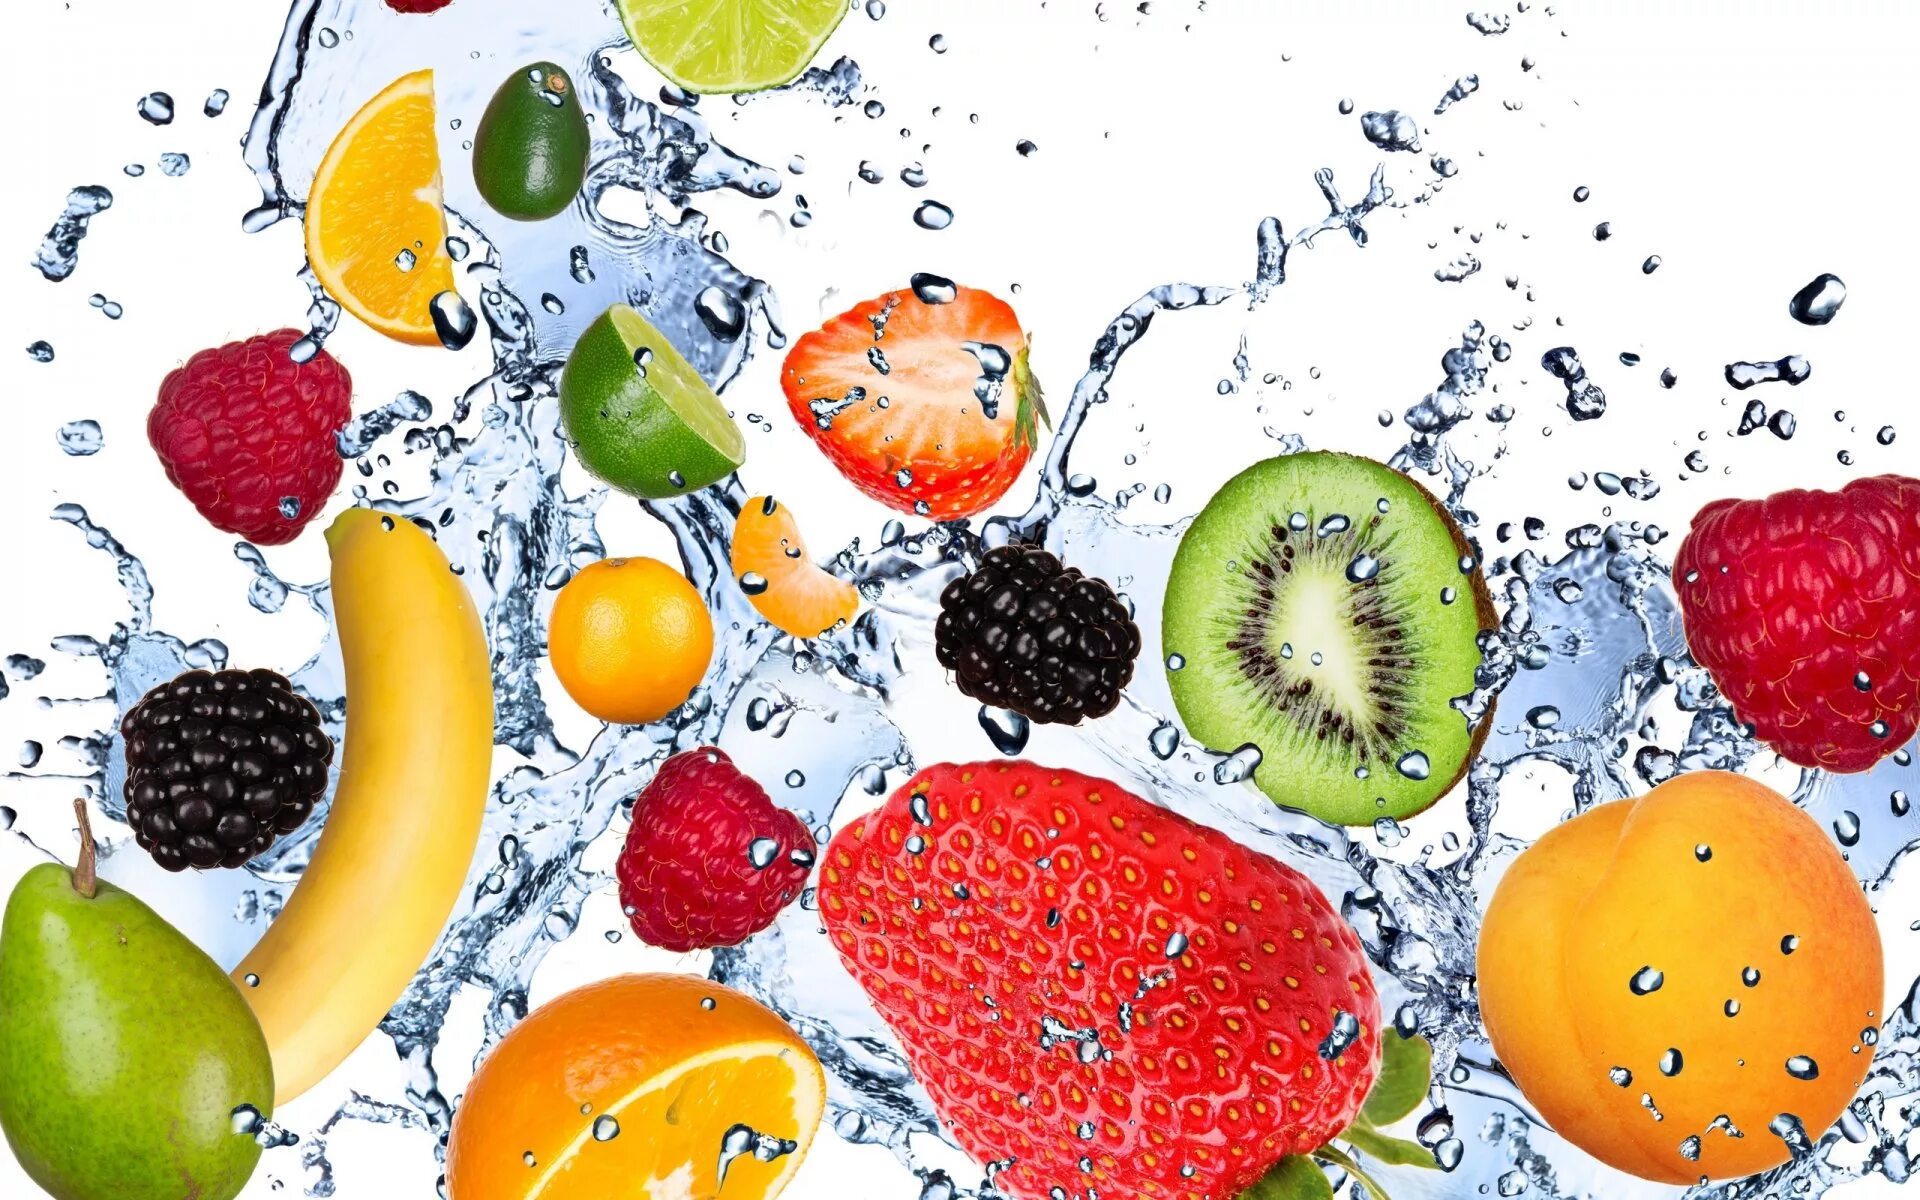 Обои фрукты. Фрукты в воде. Сочные фрукты. Фотообои фрукты. Фрукты фон.